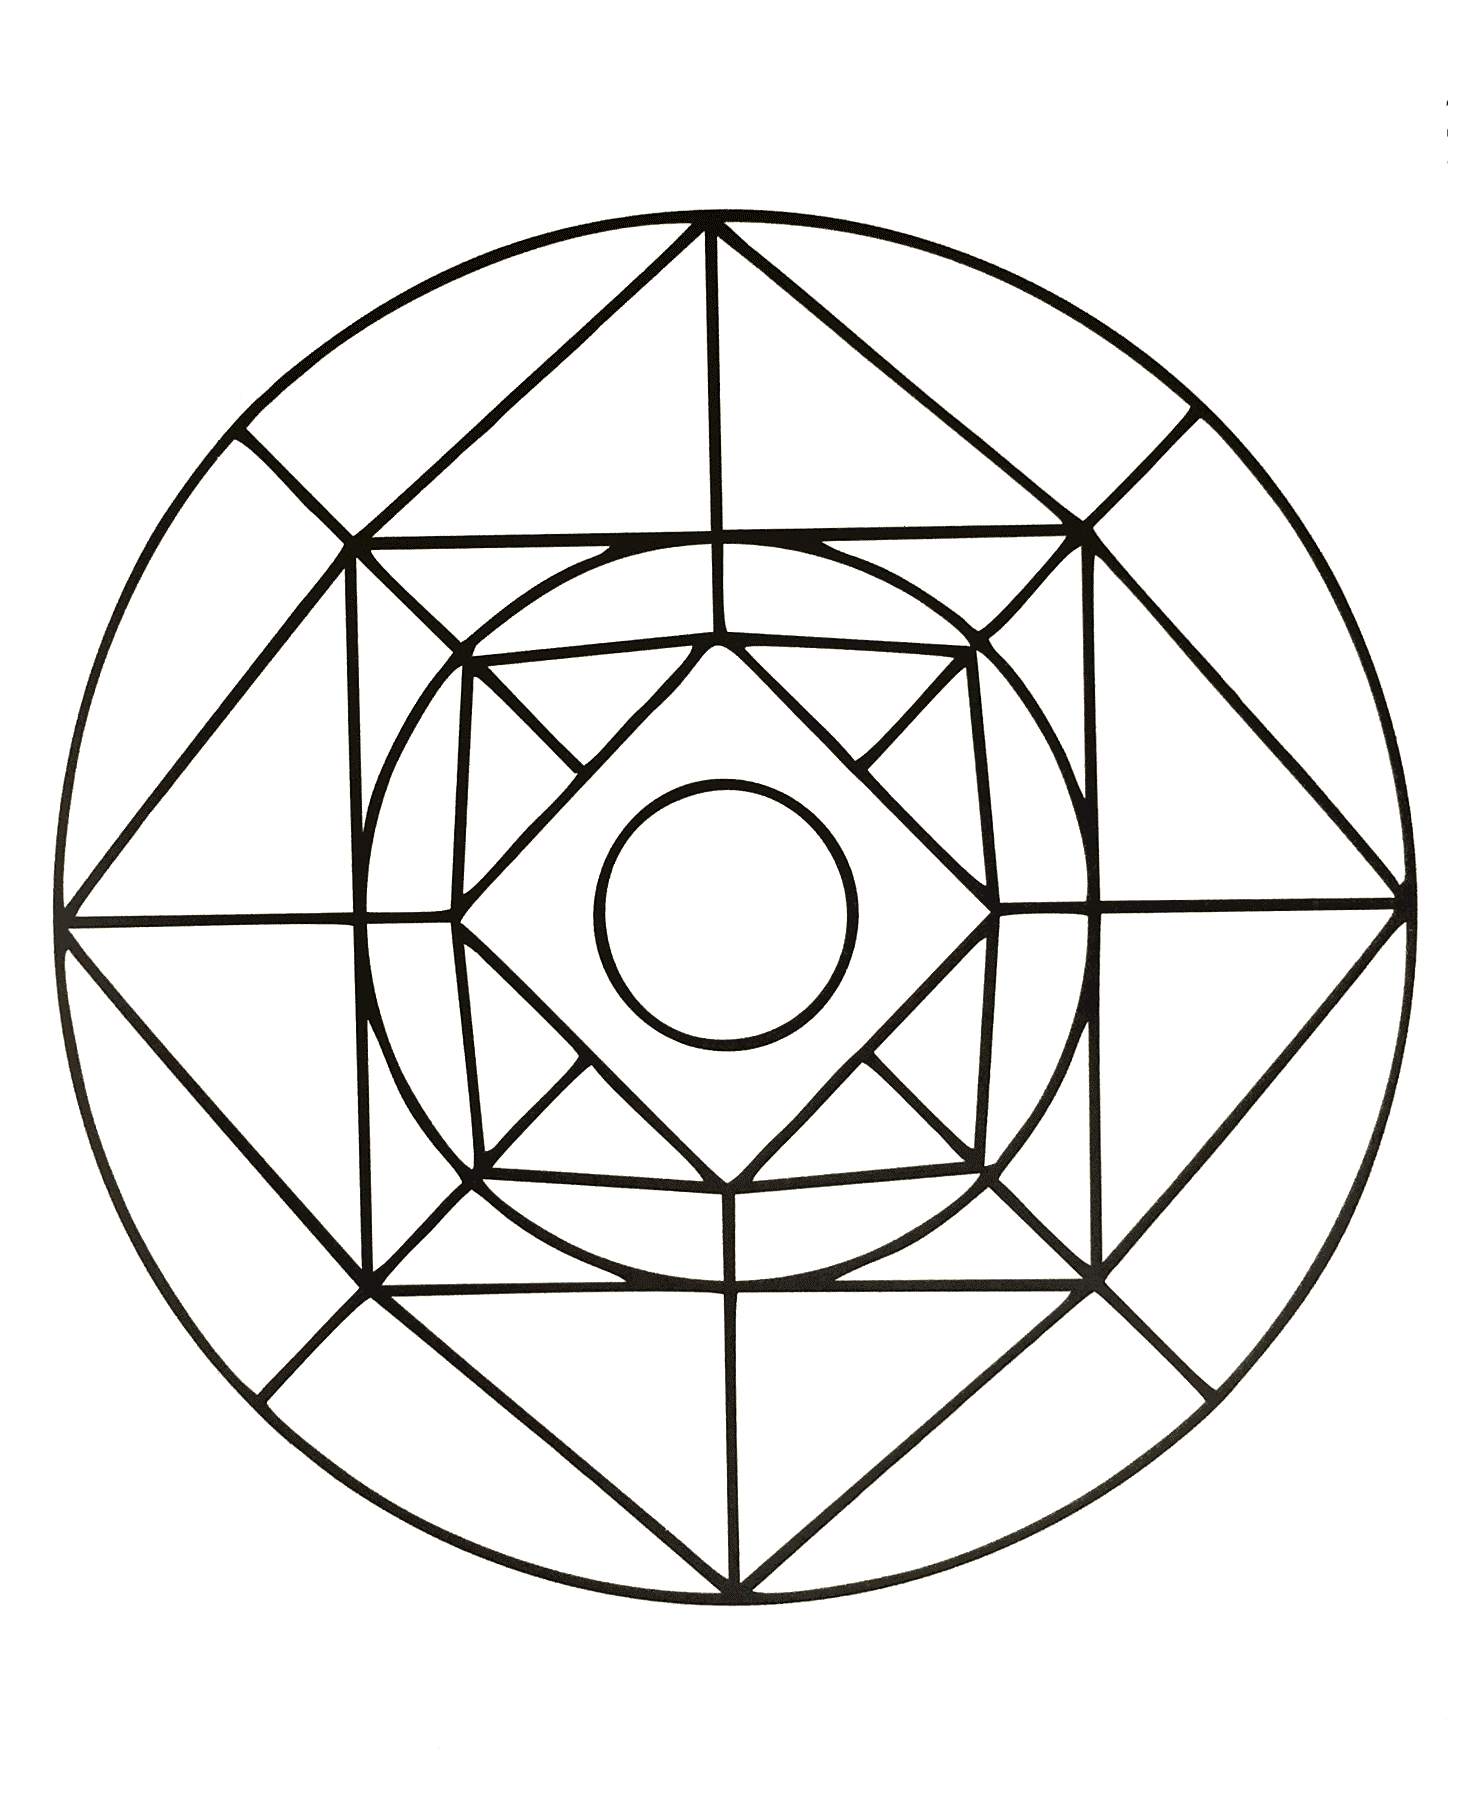 Joli mandala de forme géométrique où figure plusieurs carrés et un cercle au milieu. Assez facile à colorier.